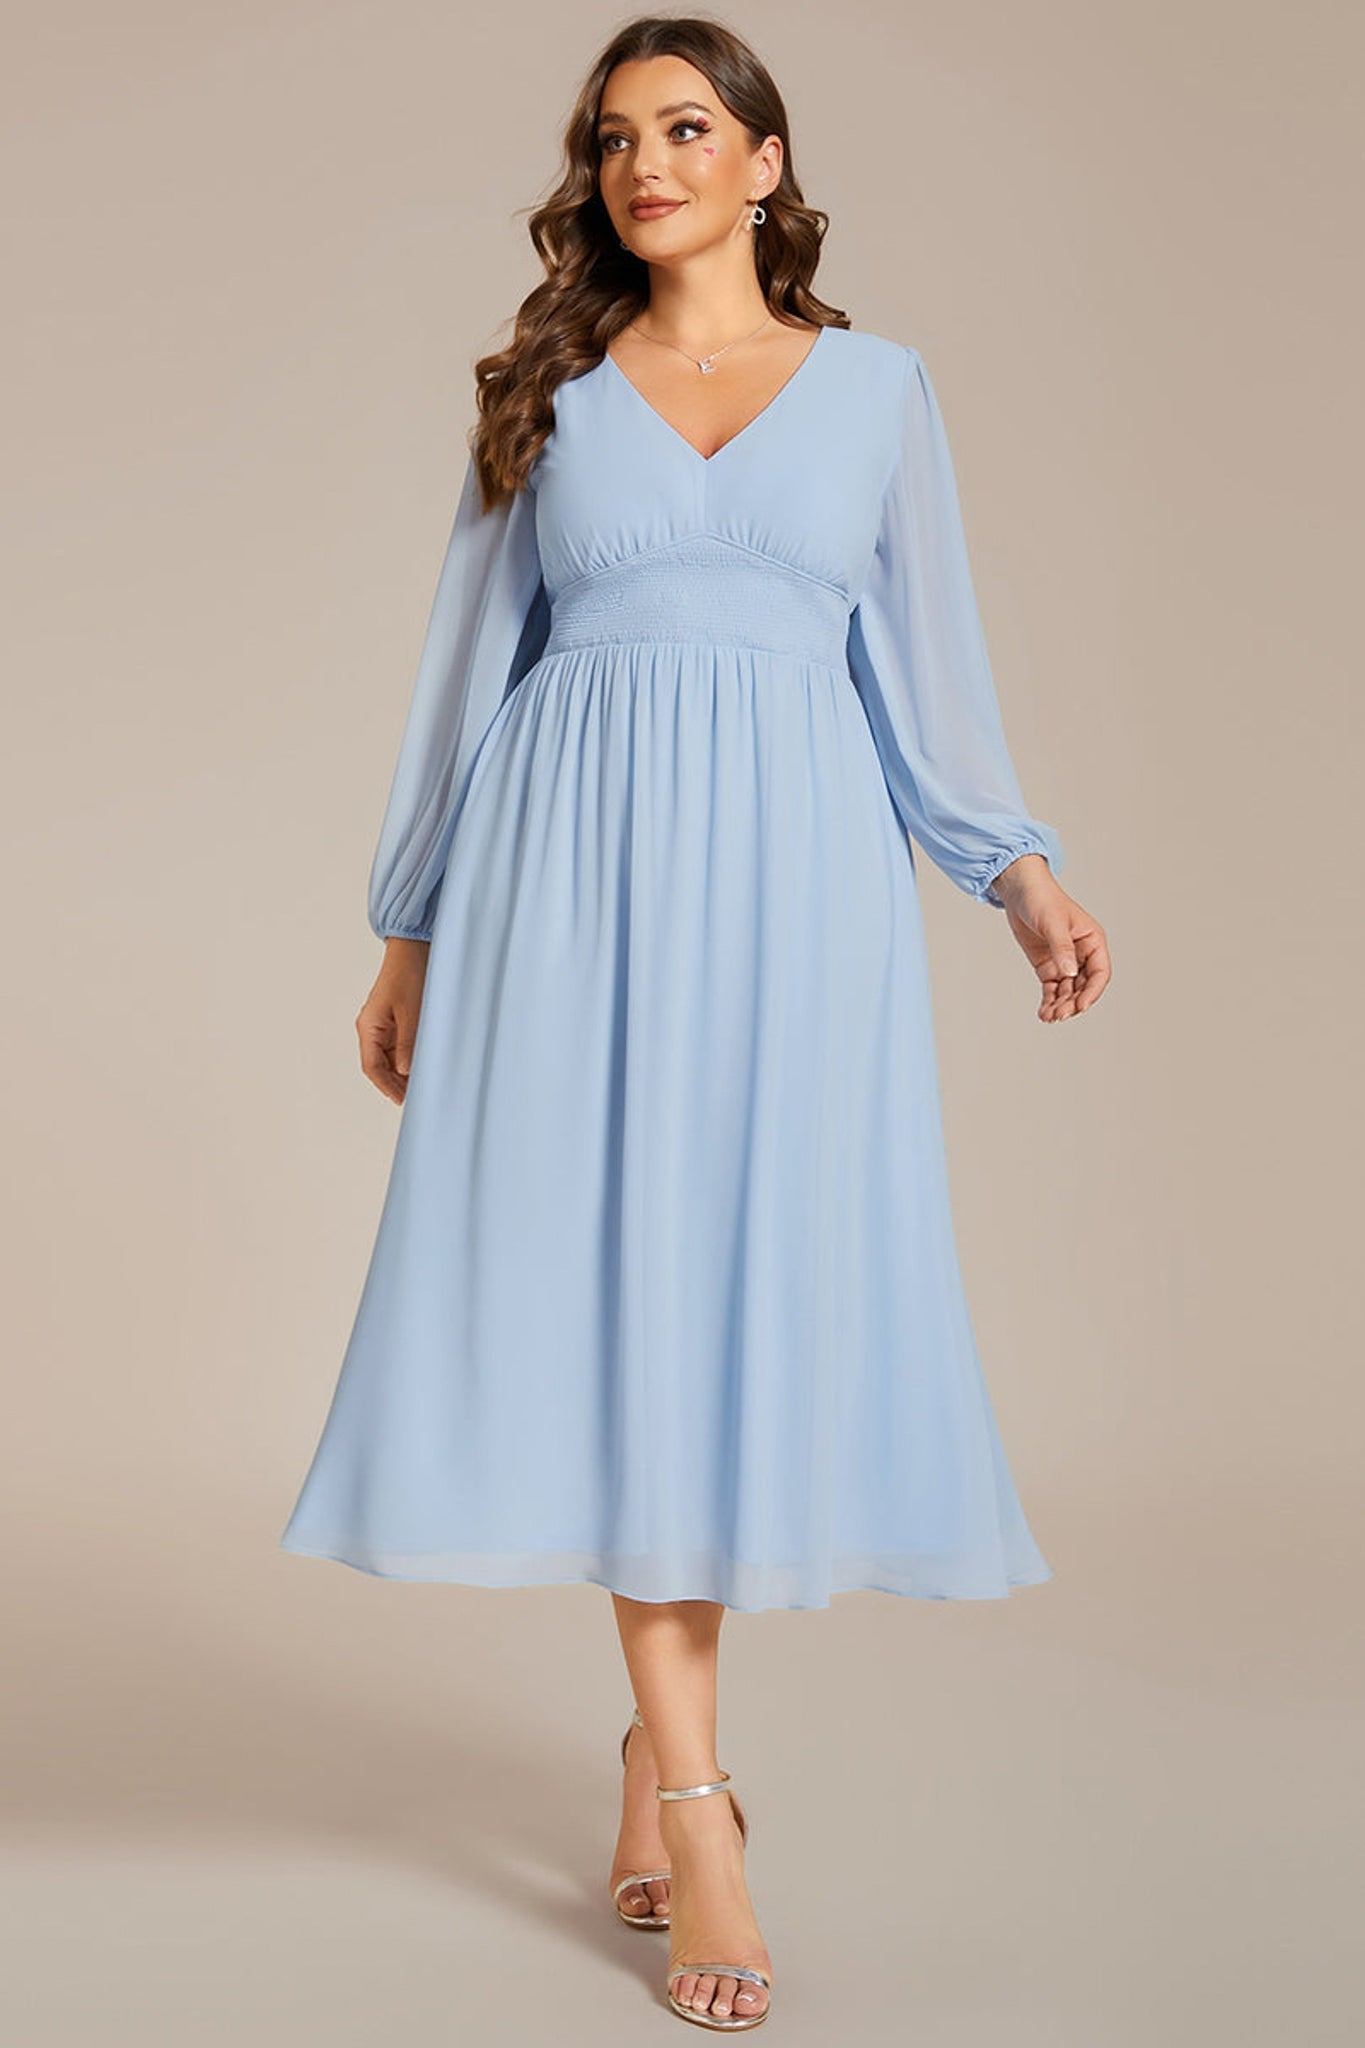 Plus size Everpretty Baby Blue chiffon Dress